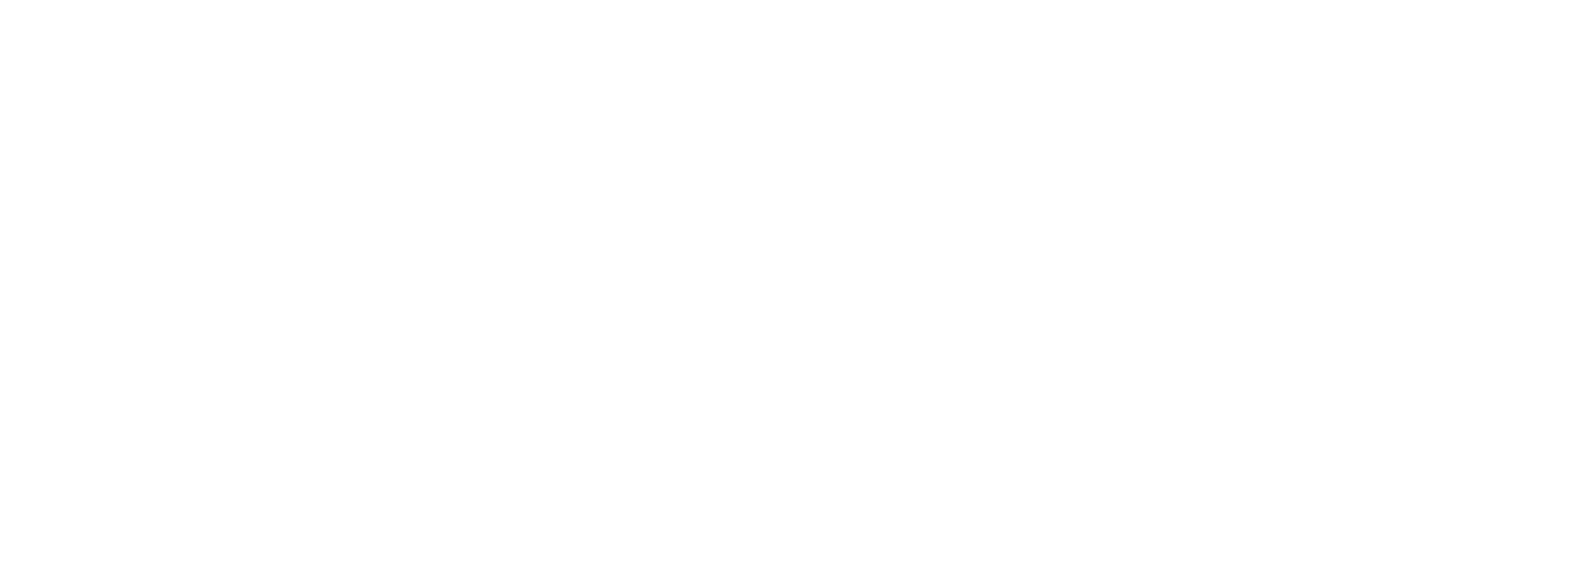 Jastrzebska Spólka Weglowa logo grand pour les fonds sombres (PNG transparent)